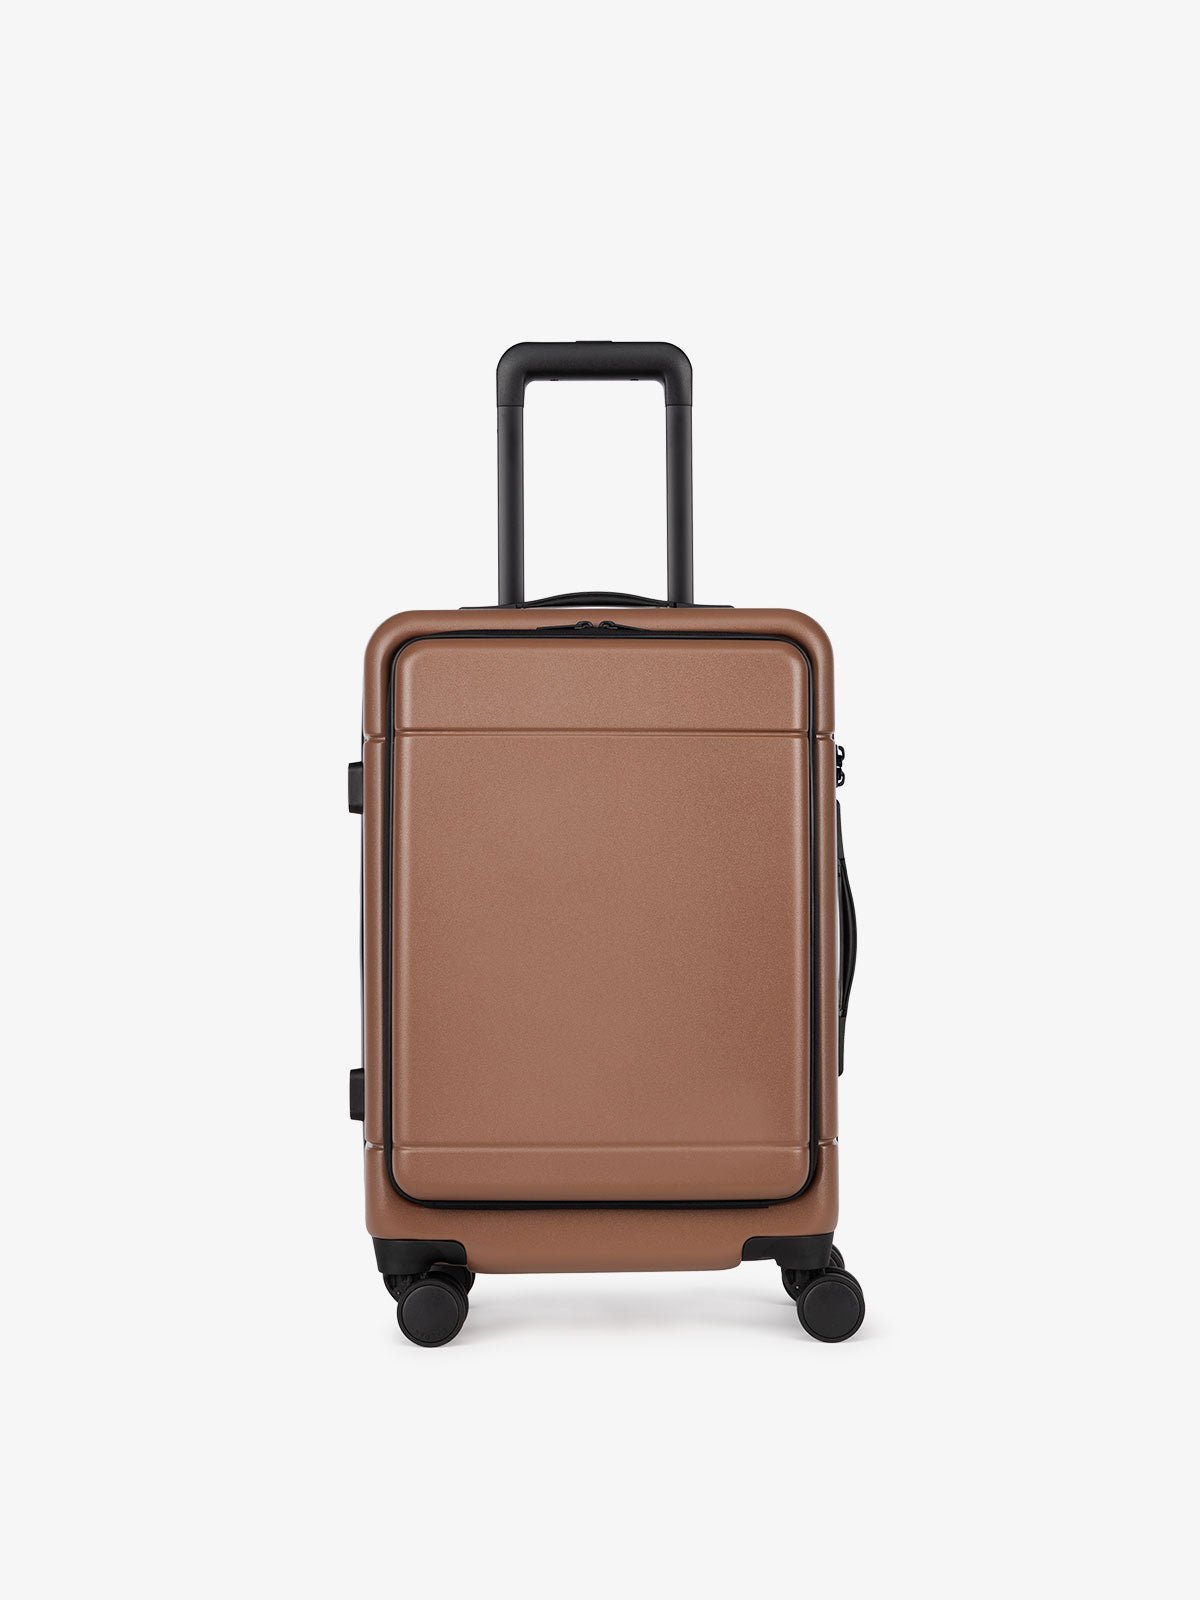 CALPAK Hue hardside carry-on suitcase with laptop pocket in brown hazel color